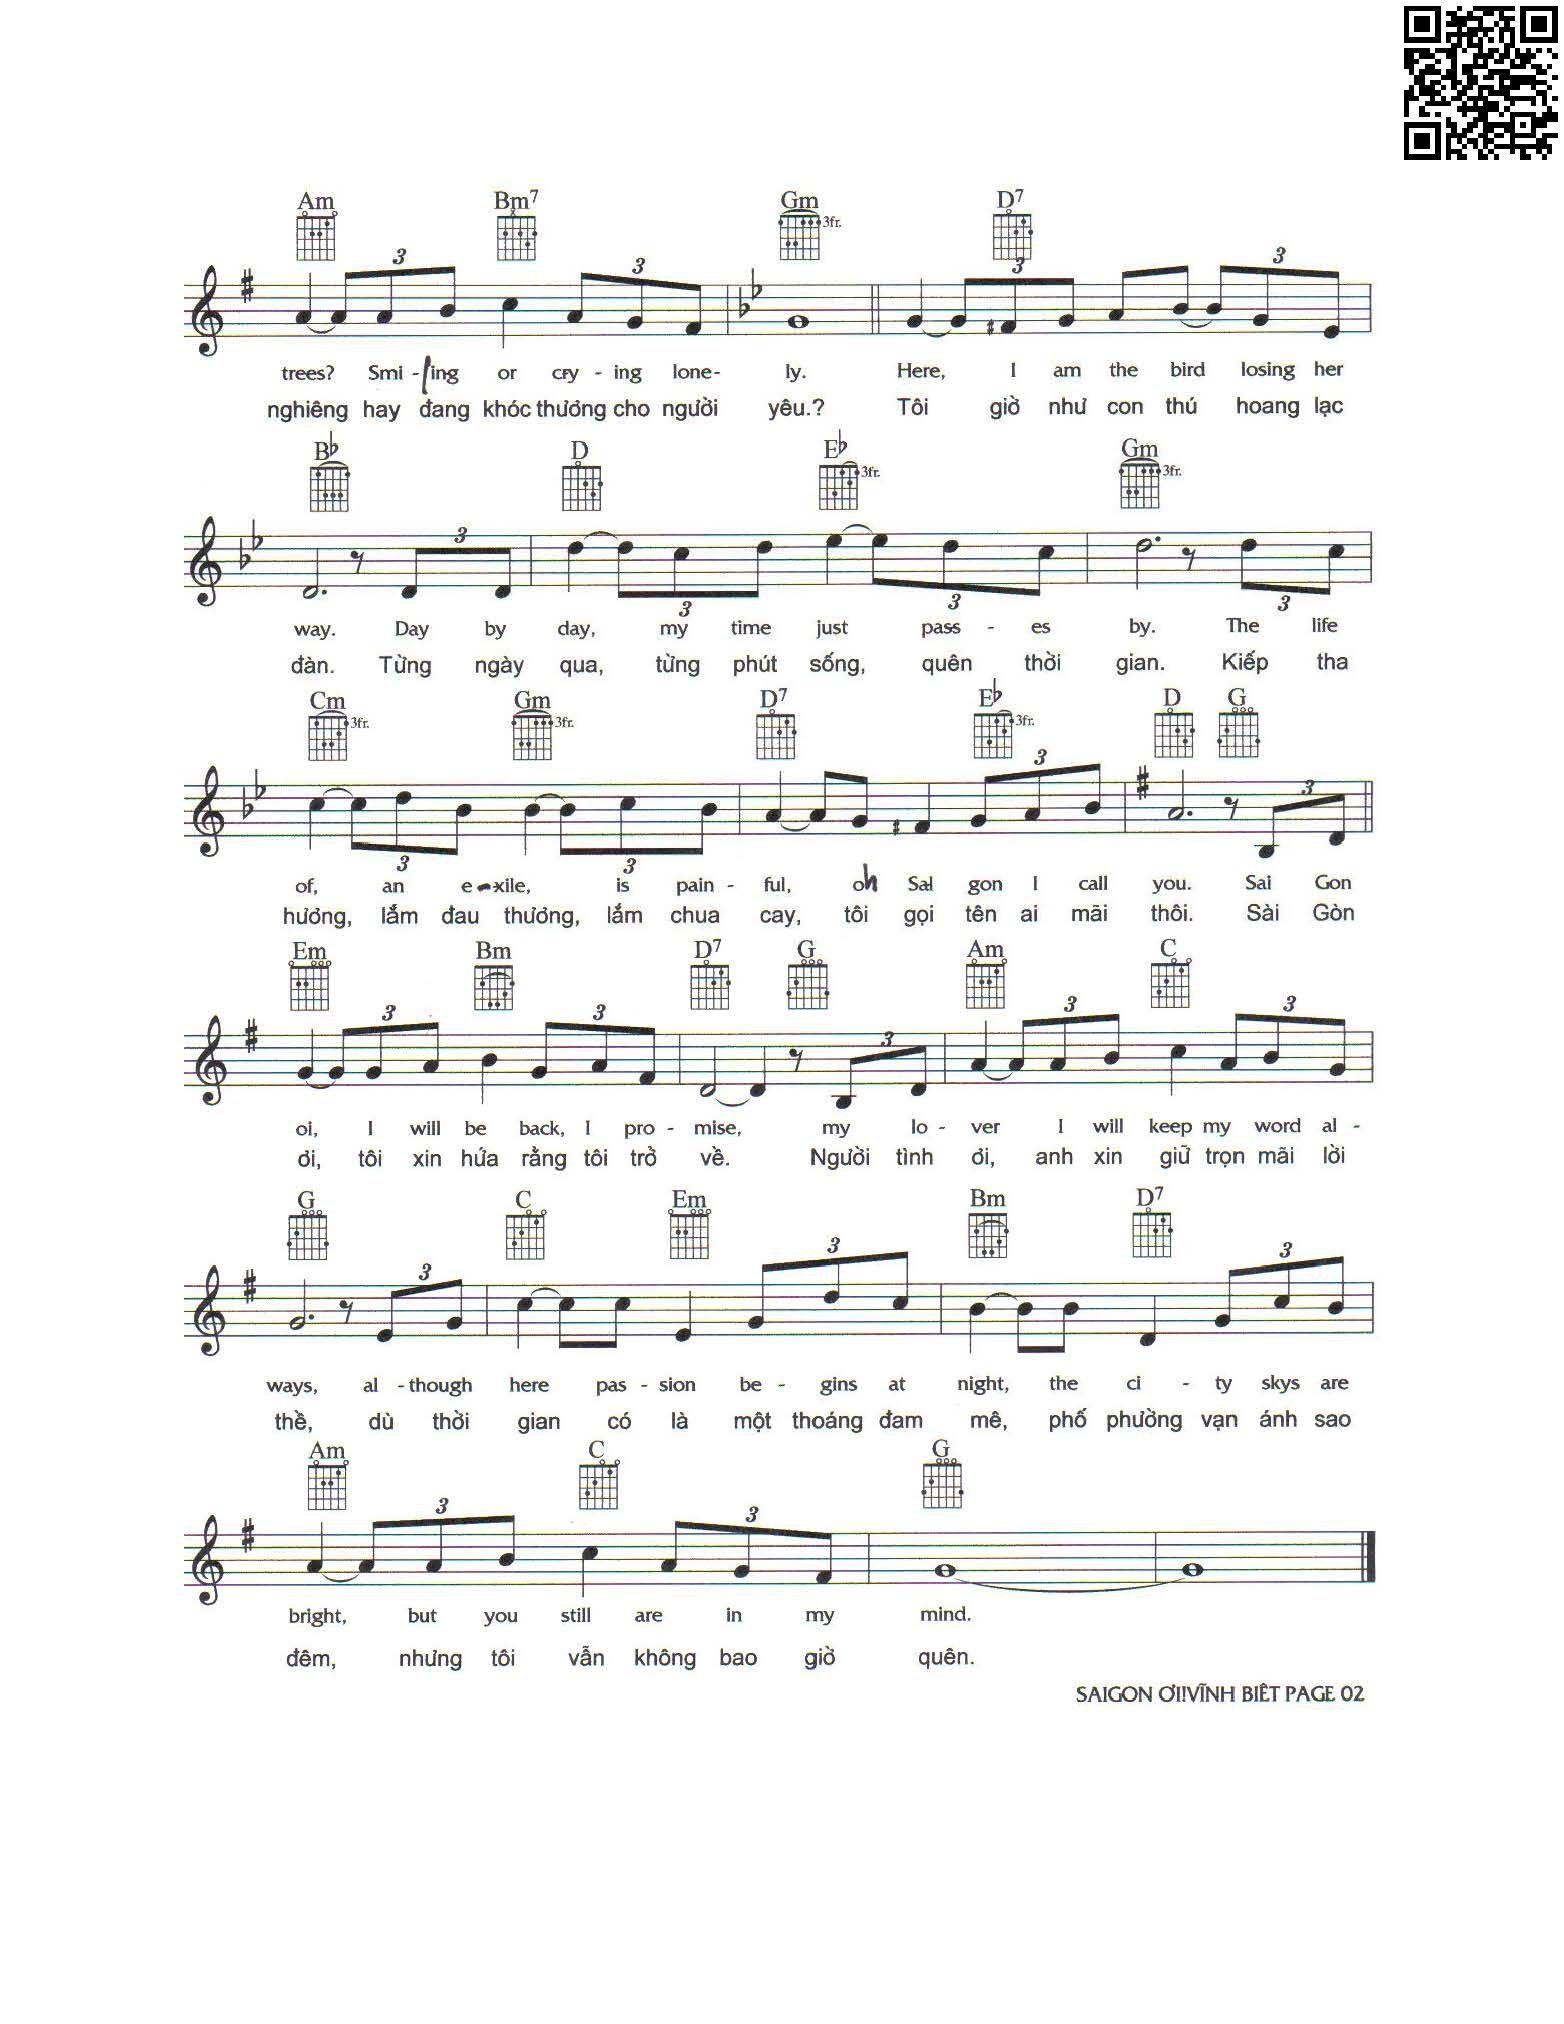 Trang 2 của Sheet nhạc PDF bài hát Sài Gòn ơi vĩnh biệt - Nam Lộc